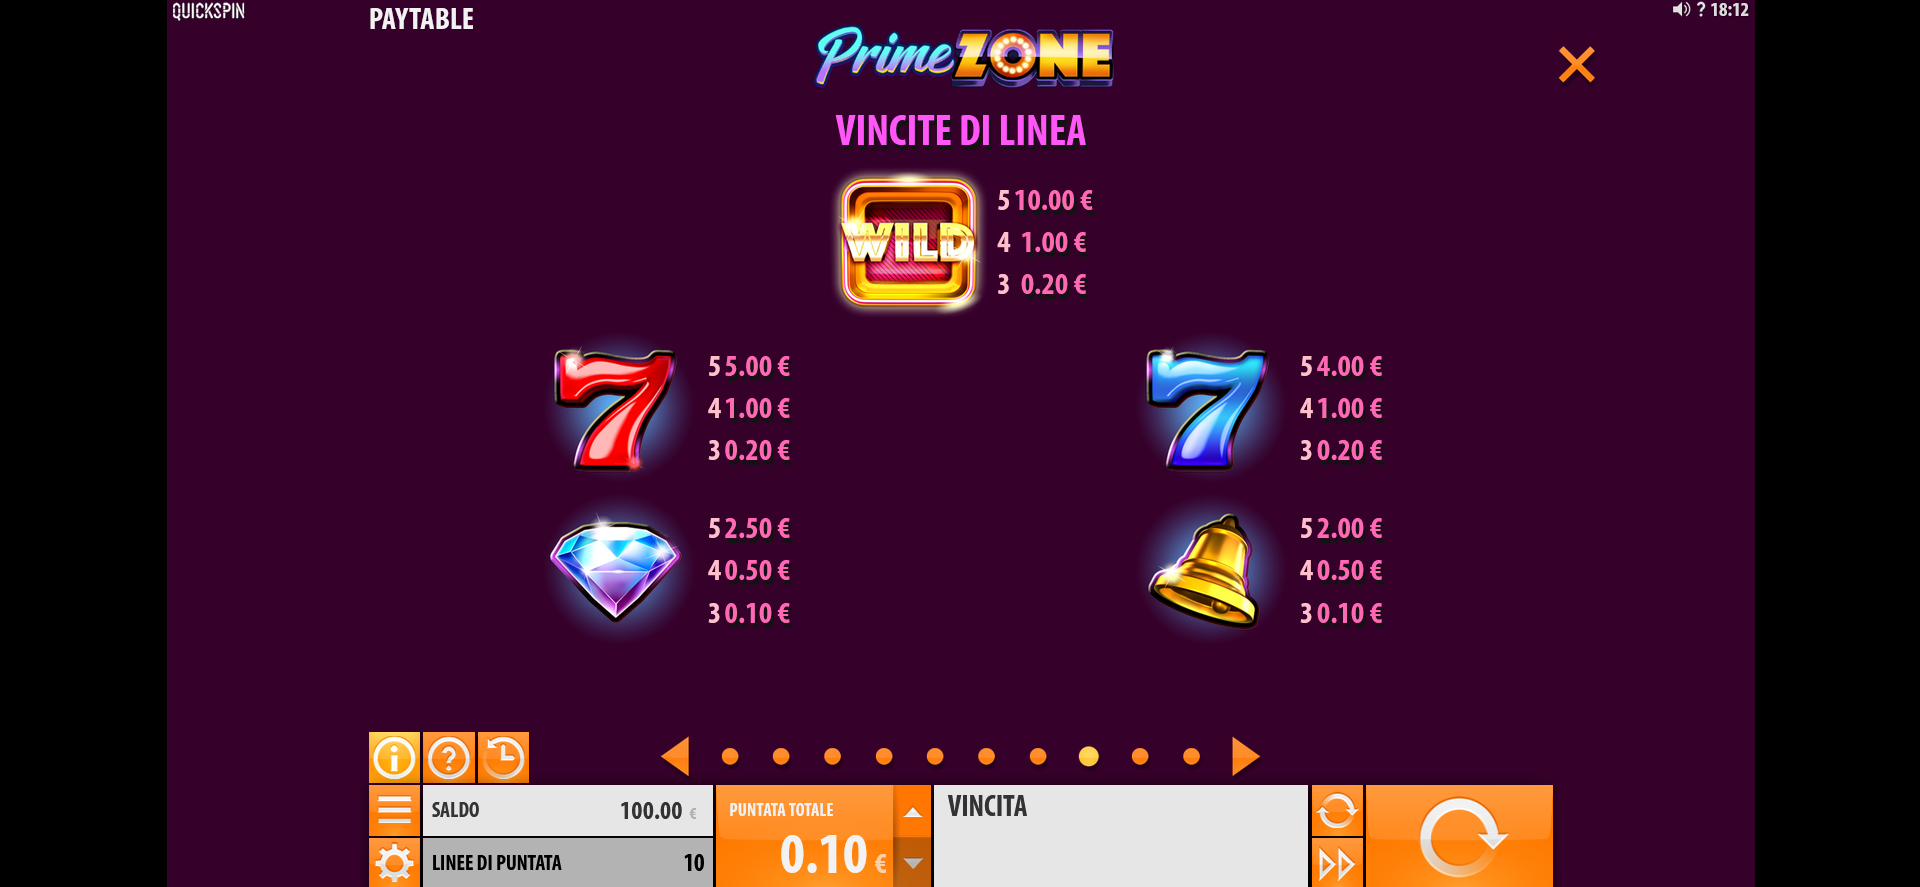 paytable della slot machine prime zone